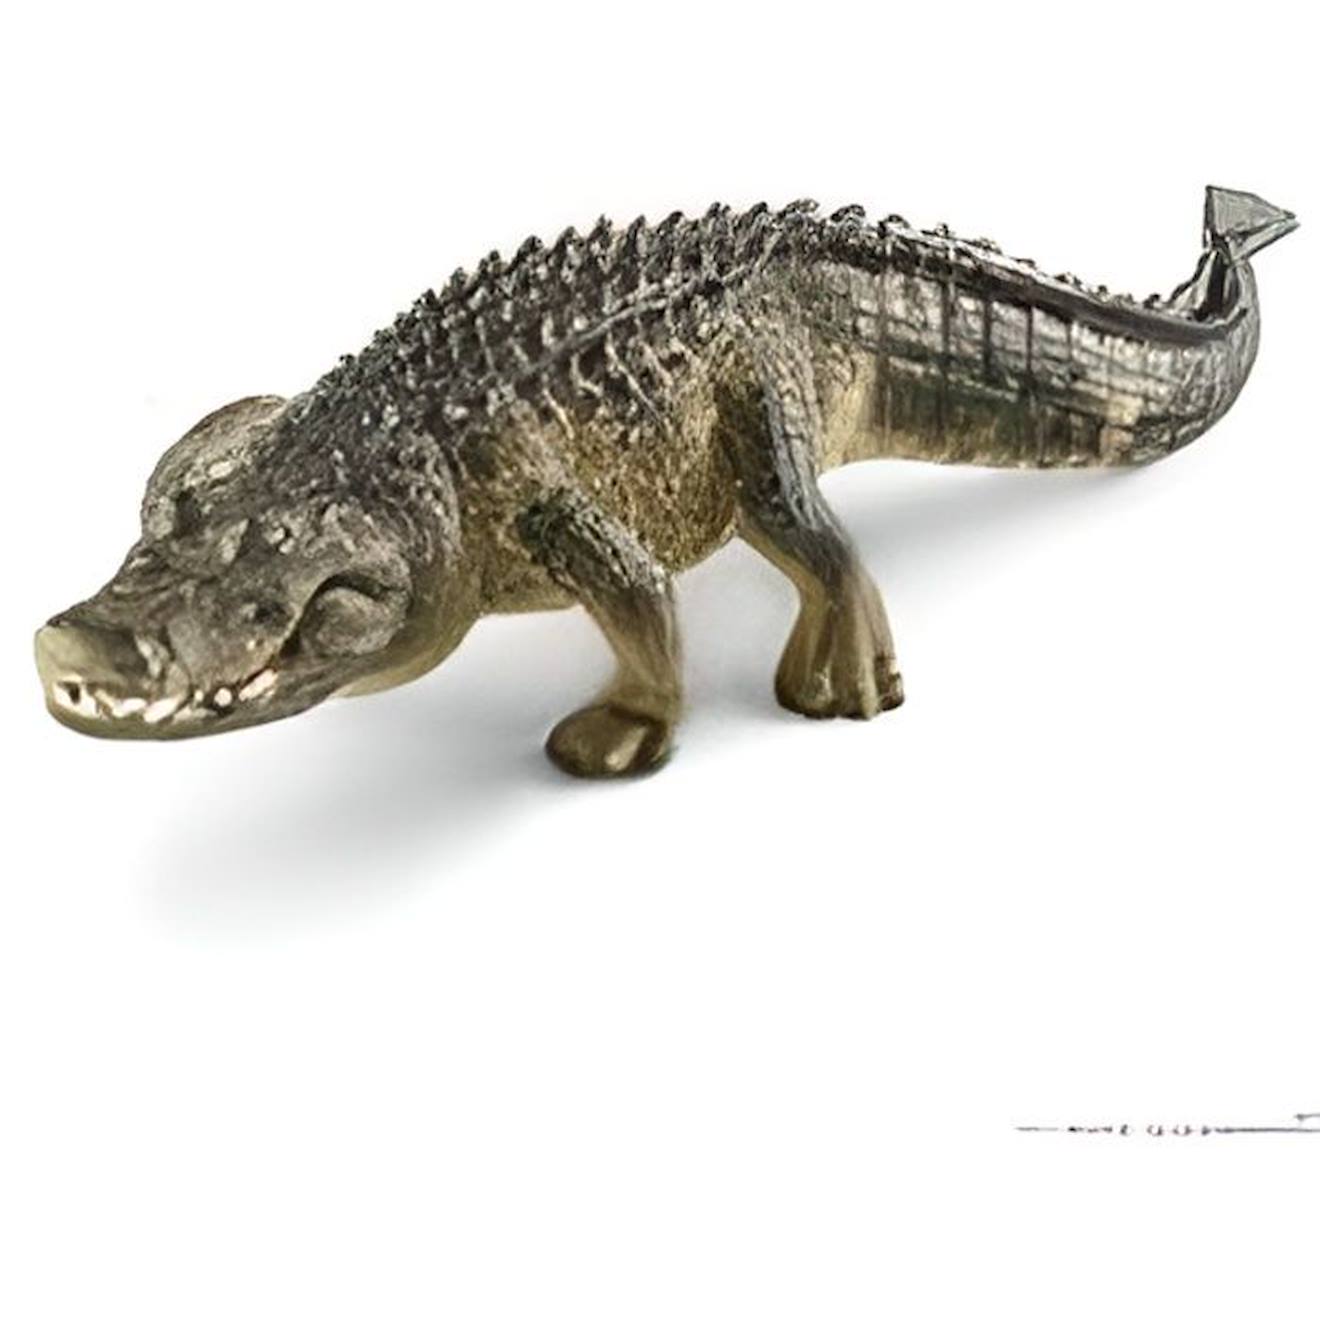 Figurine Alligator - Schleich - 14727 - Wild Life - Personnages Miniature - Mixte - 3 Ans Et Plus Ve